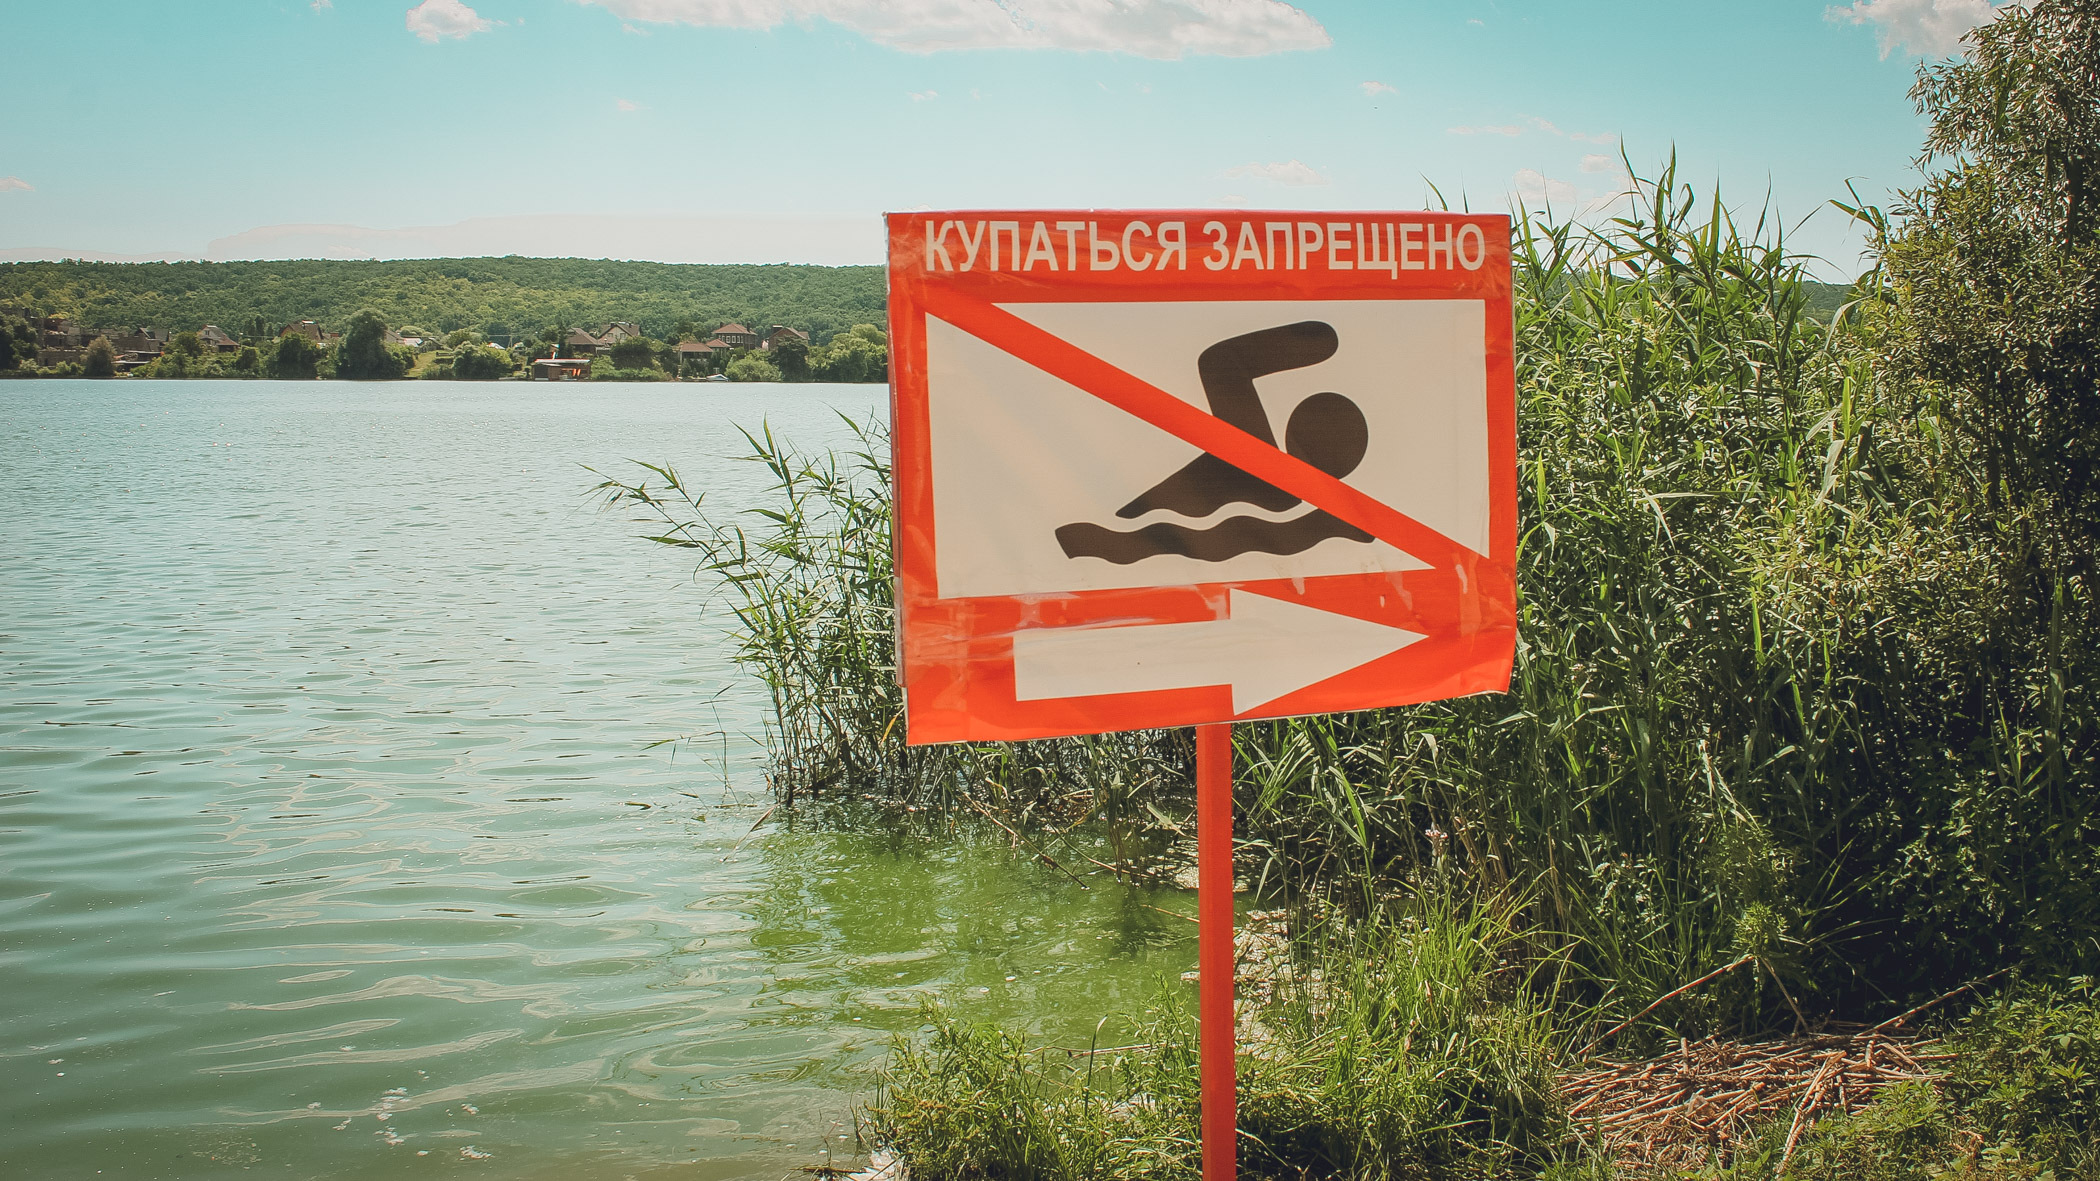 На озере Андреевском утонул известный тамада из Свердловской области